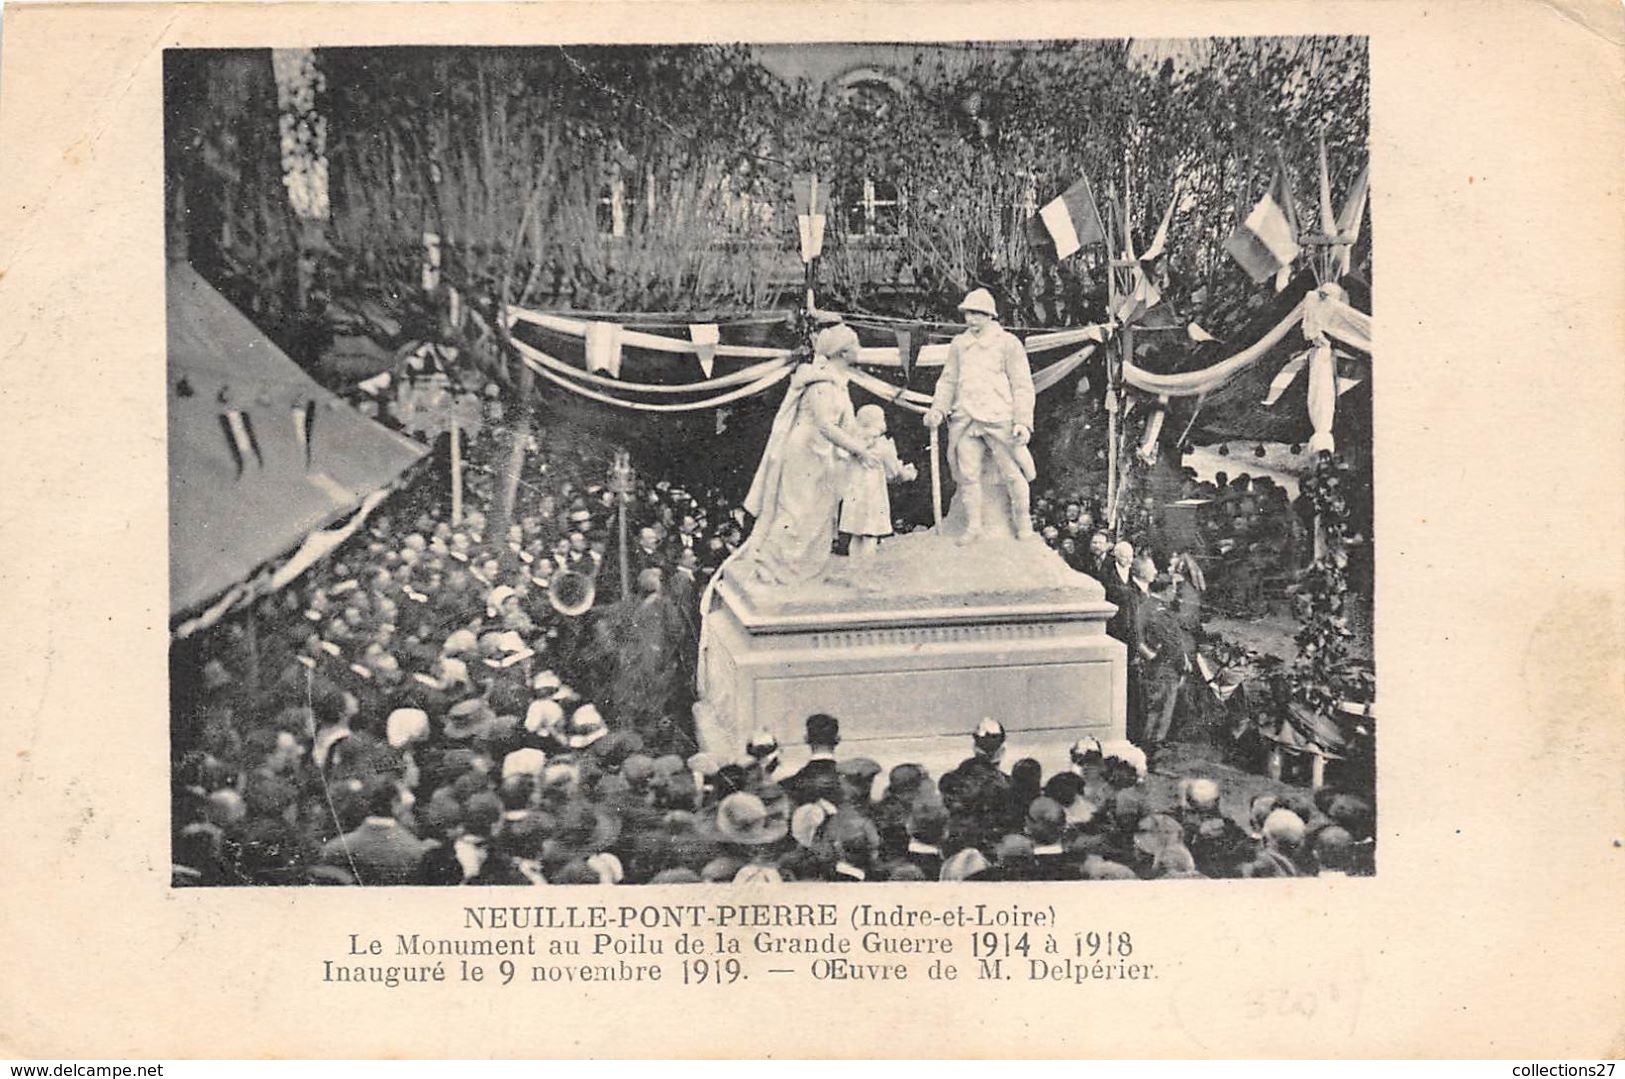 37-NEUILLE-PONT-PIERRE- LE MONUMENT AU POILU DE LA GRANDE GUERRE 1914/18, INAUGURE LE 9 NOVEMBRE 1919 - Neuillé-Pont-Pierre